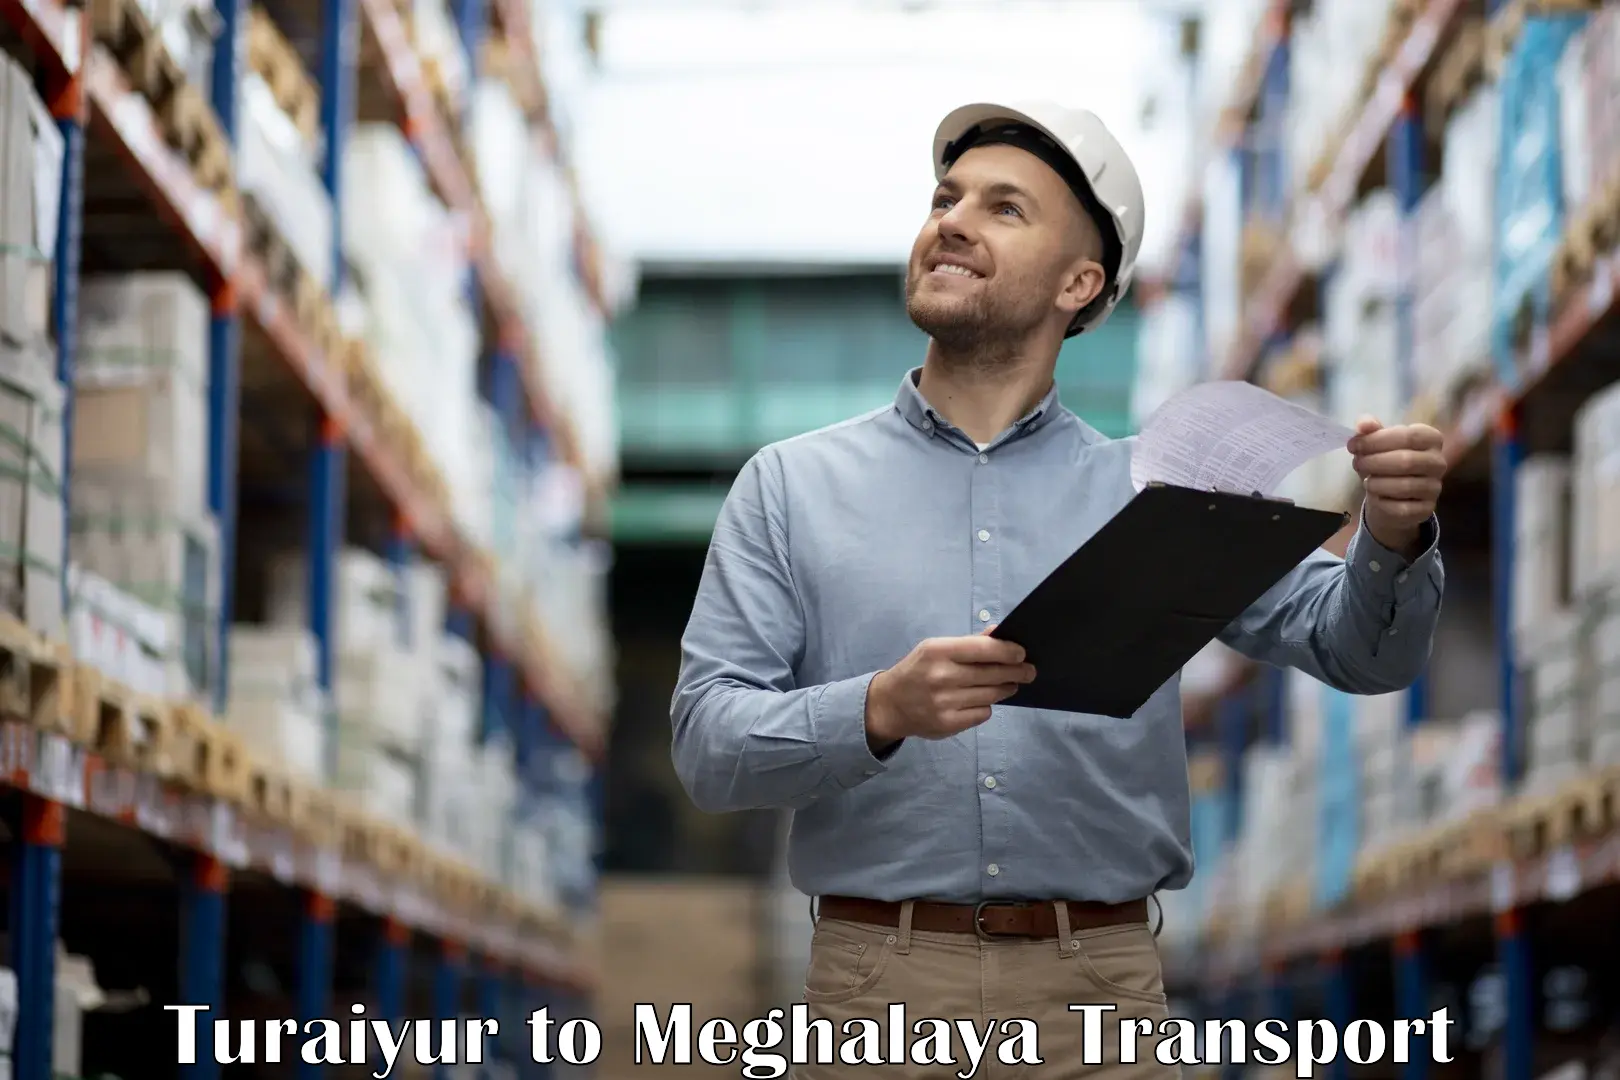 Furniture transport service Turaiyur to Meghalaya